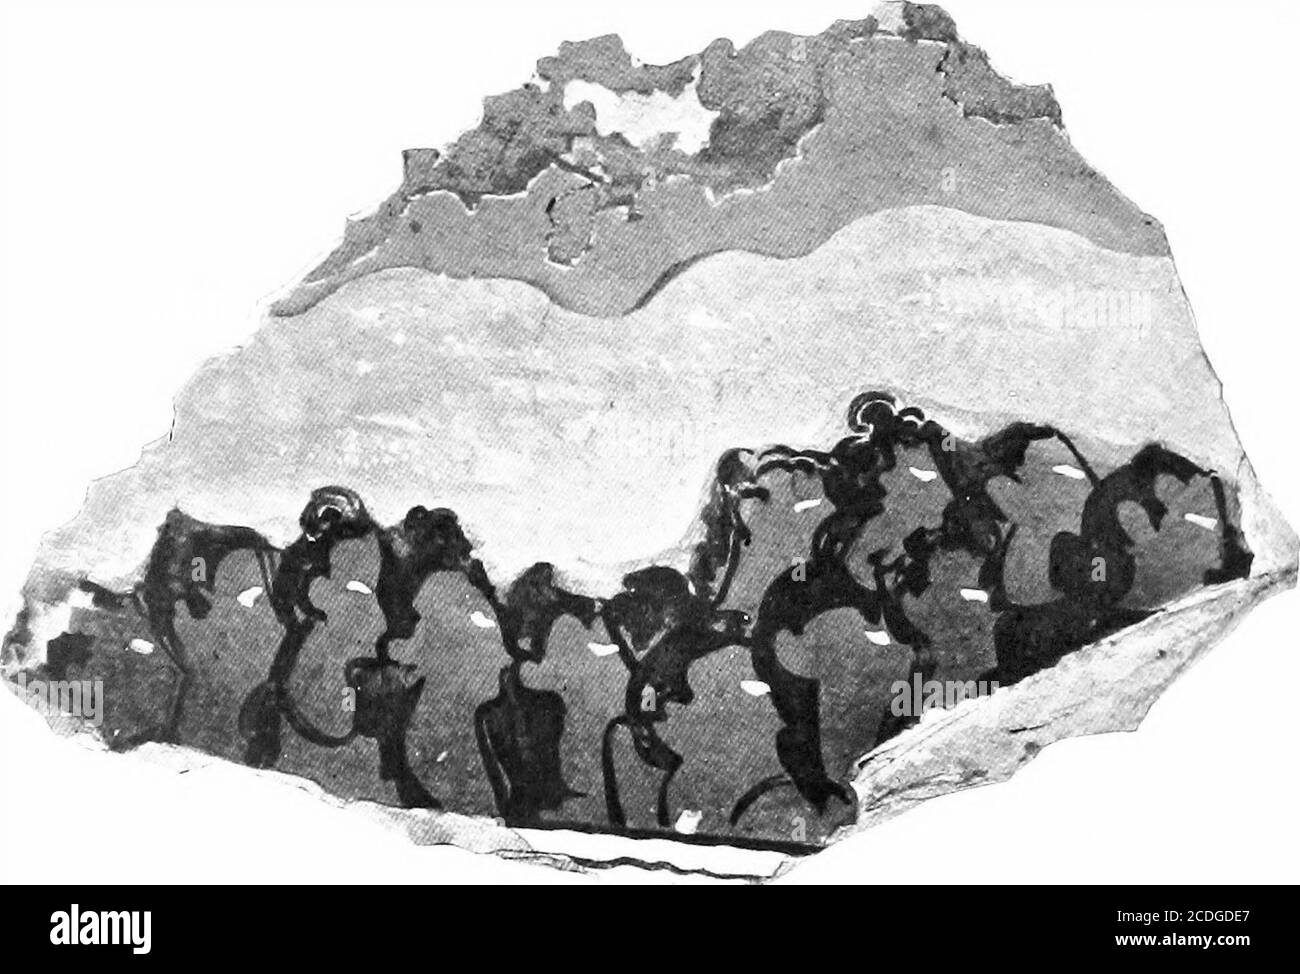 . Der Palast von Minos: Ein vergleichender Bericht der aufeinanderfolgenden Stadien der frühen kretischen Zivilisation, wie durch die Entdeckungen an Knossos veranschaulicht. L über den Pillar Crypts, Zu denen die großen Säulen gehörten, die oben illustriert wurden.^ das exquisite Finish dieses Werkes ist unübertroffen von jedem minoischen gemalten Relief, von dem Reste erhalten geblieben sind, Und die sorgfältige Wiedergabe der kleinsten Details vielleicht im Vergleich mit dem der besten Miniatur-Fresken der folgenden S. 442, Feige. 318. M. M. Ill: MINOISCHES FRESKO: WANDMALEREIEN, ETC. 527 Epoche. Die Farben sind außergewöhnlich gut Stockfoto